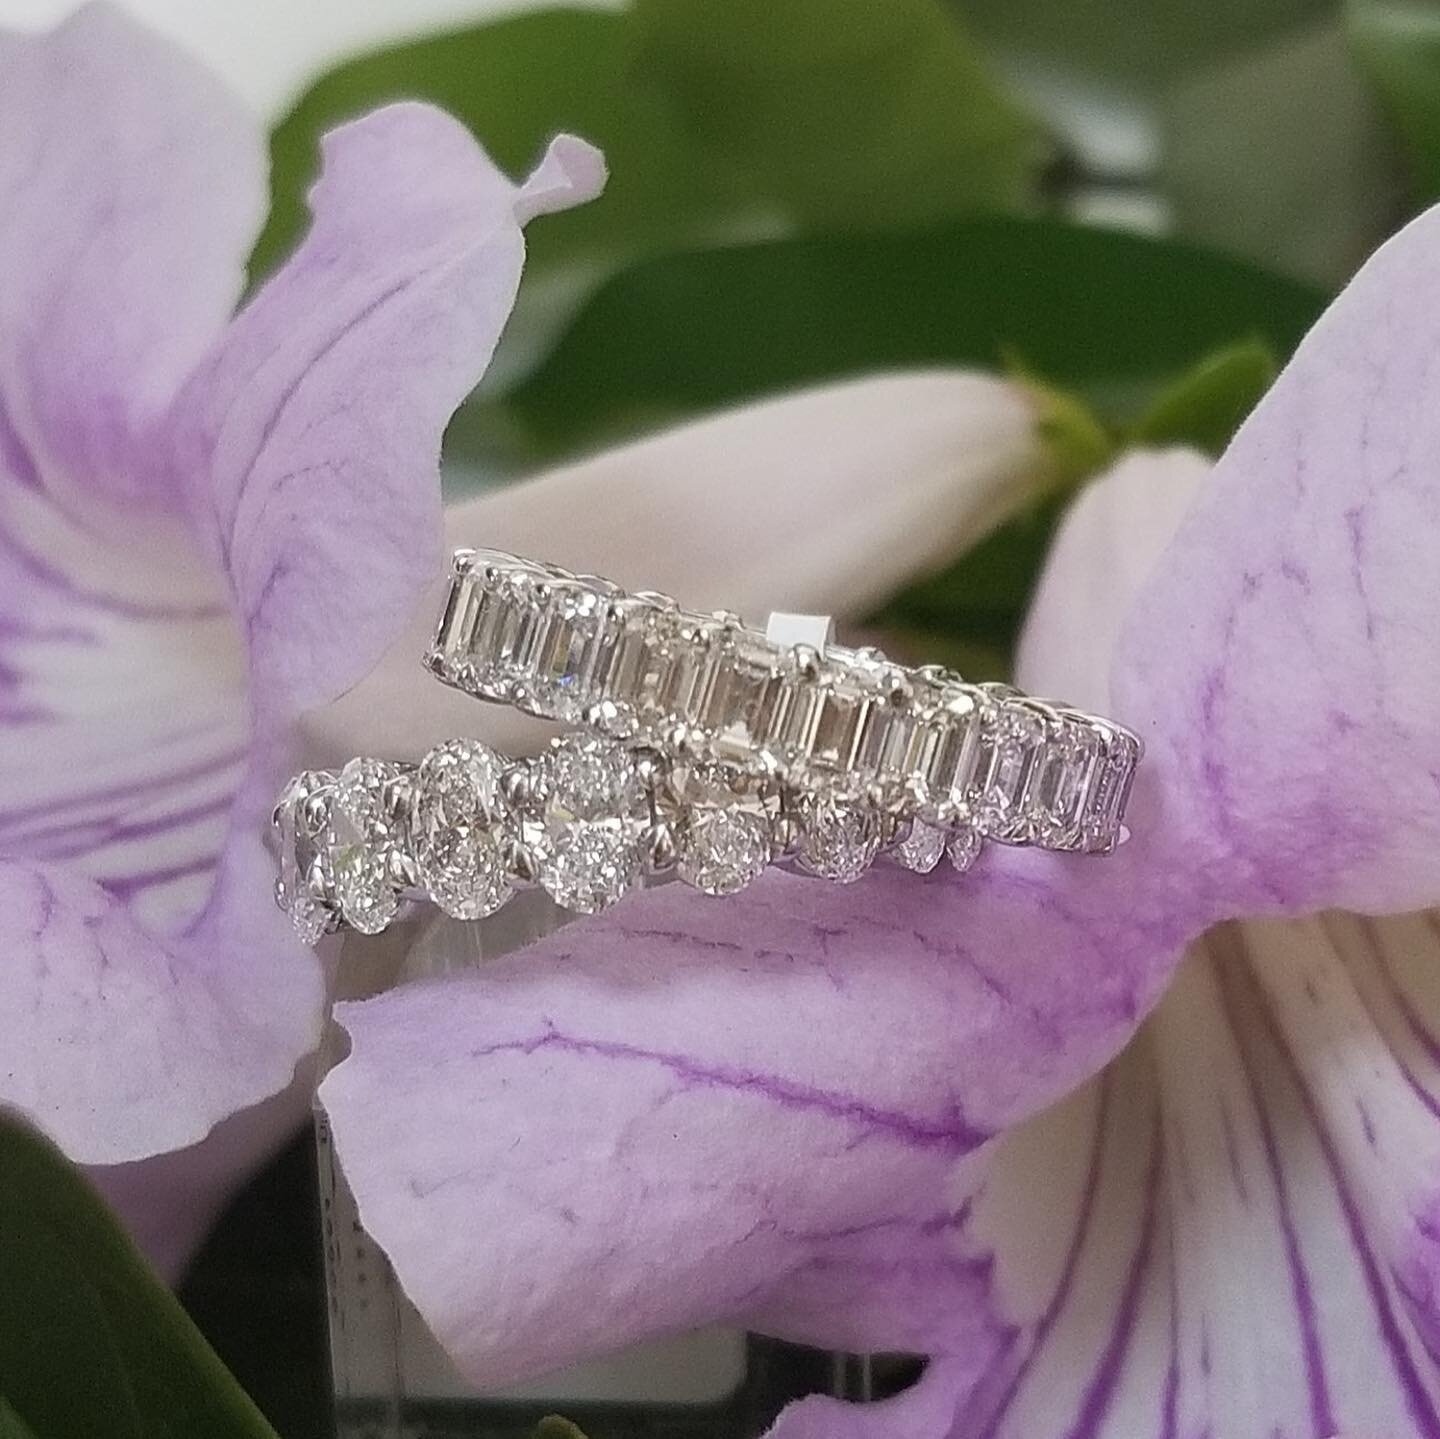 Make it an anniversary to remember💕
-
-
-
#diamondbands #ovaldiamonds #emeralddiamond #weddingbands #whitegoldring #theknot